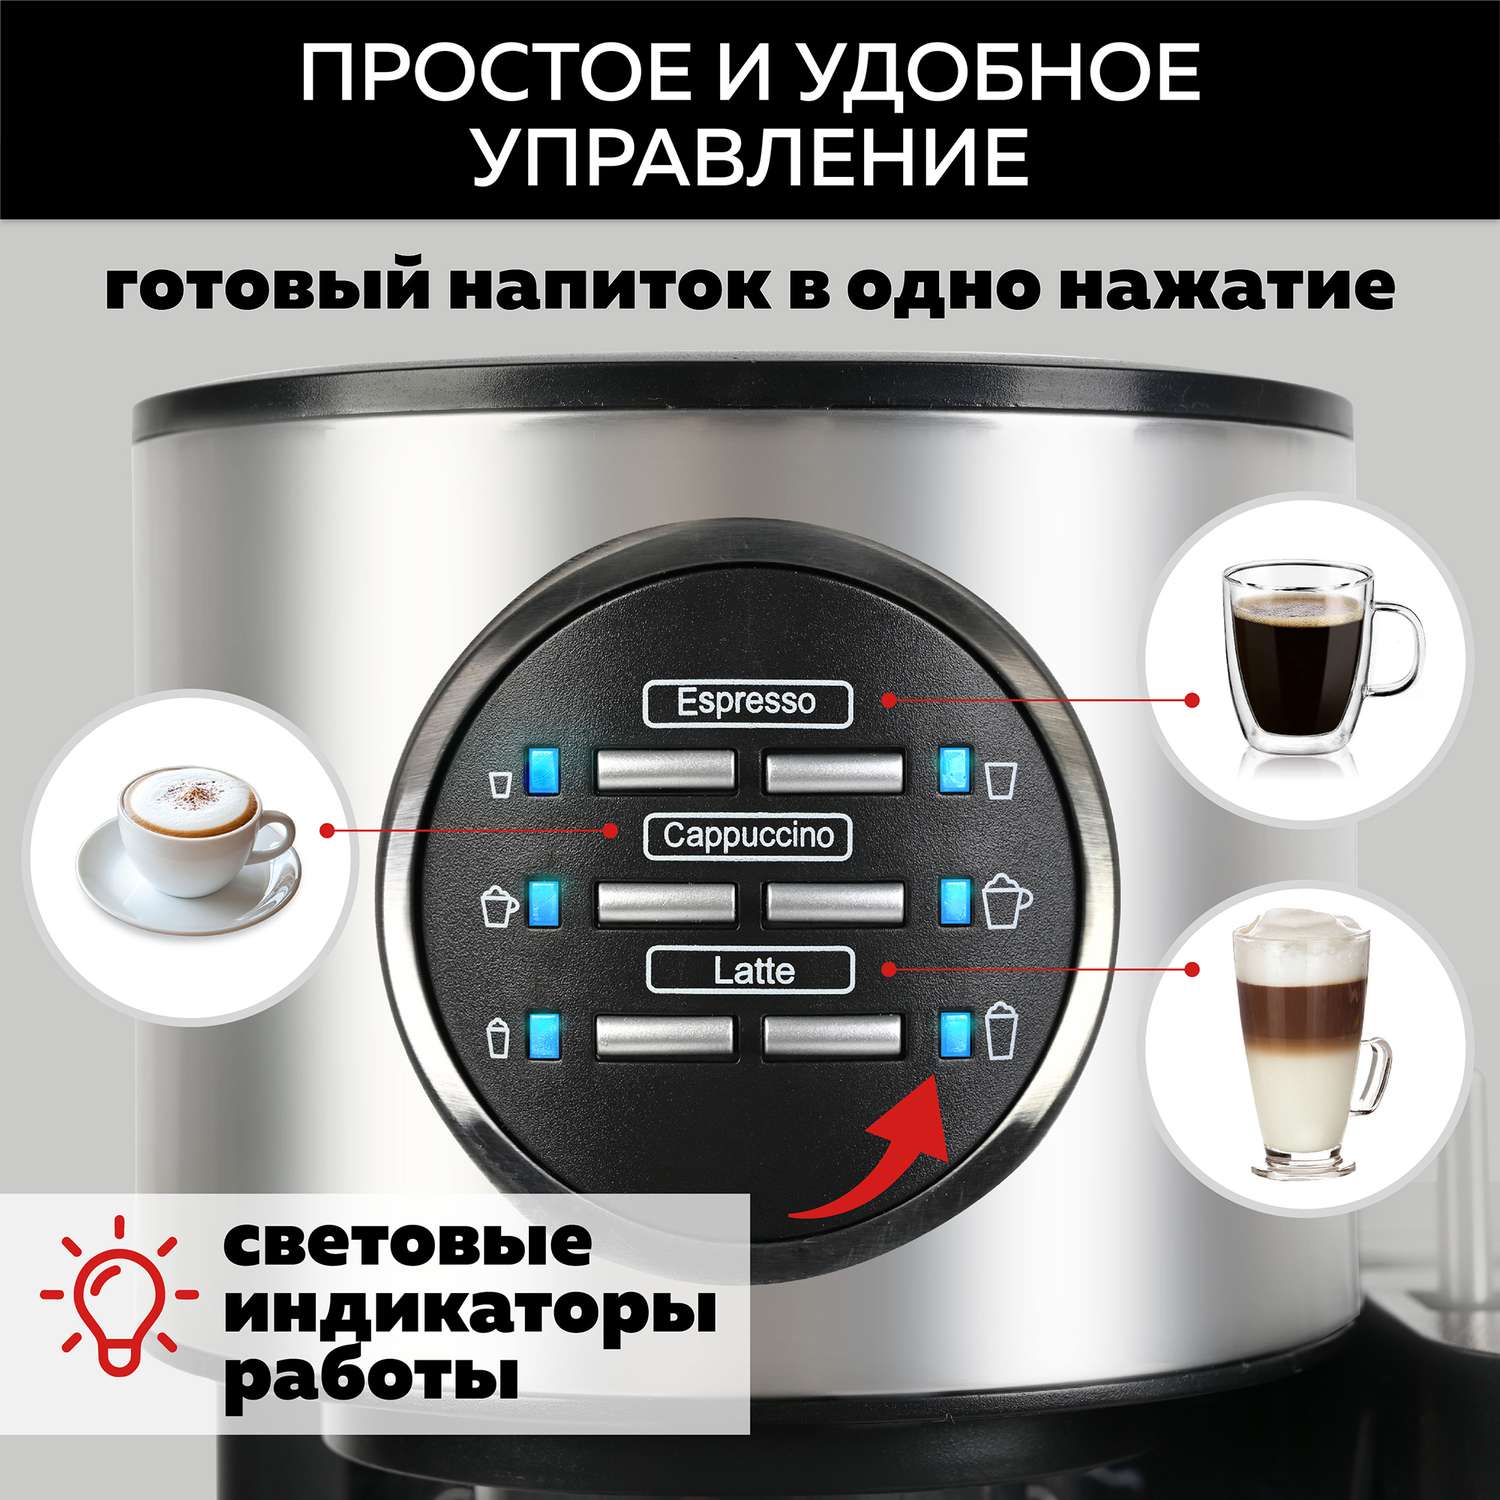 Кофеварка GFGRIL С автоматическим капучинатором 3 в 1 GFC-A300 Эспрессо-Капучино-Латте - фото 6